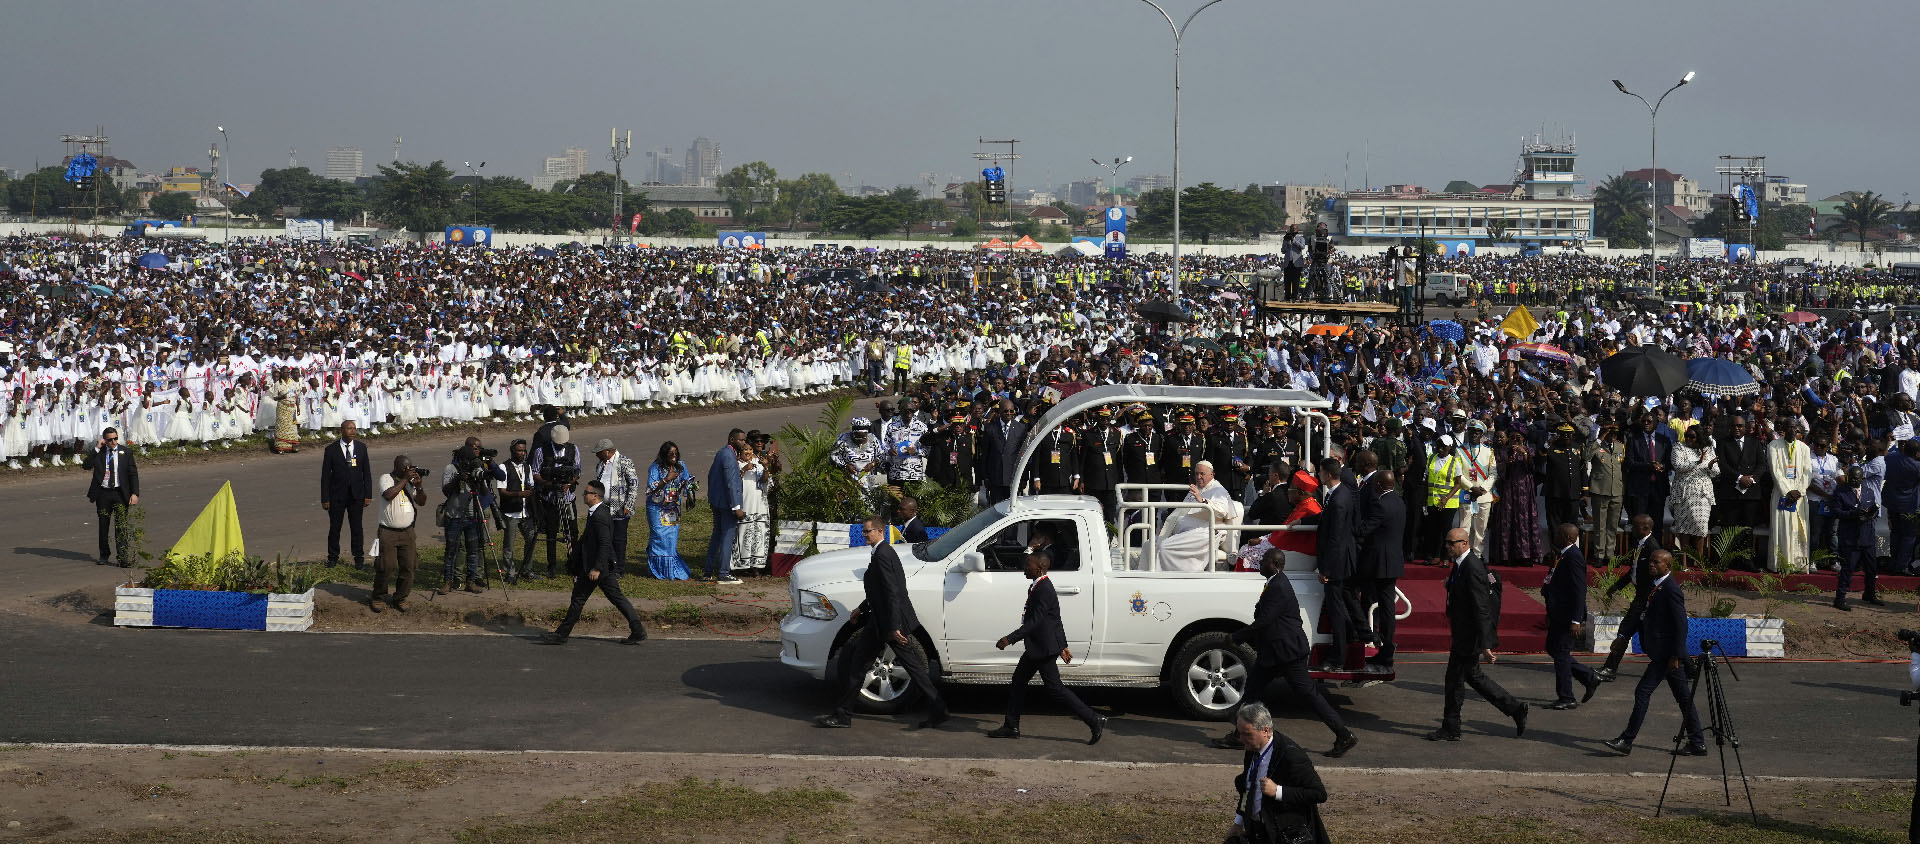 Le pape François arrive à l'aéroport de Ndolo où il va célèbrer la messe devant 1 million de Congolais | © Keystone/AP Photo/Gregorio Borgia